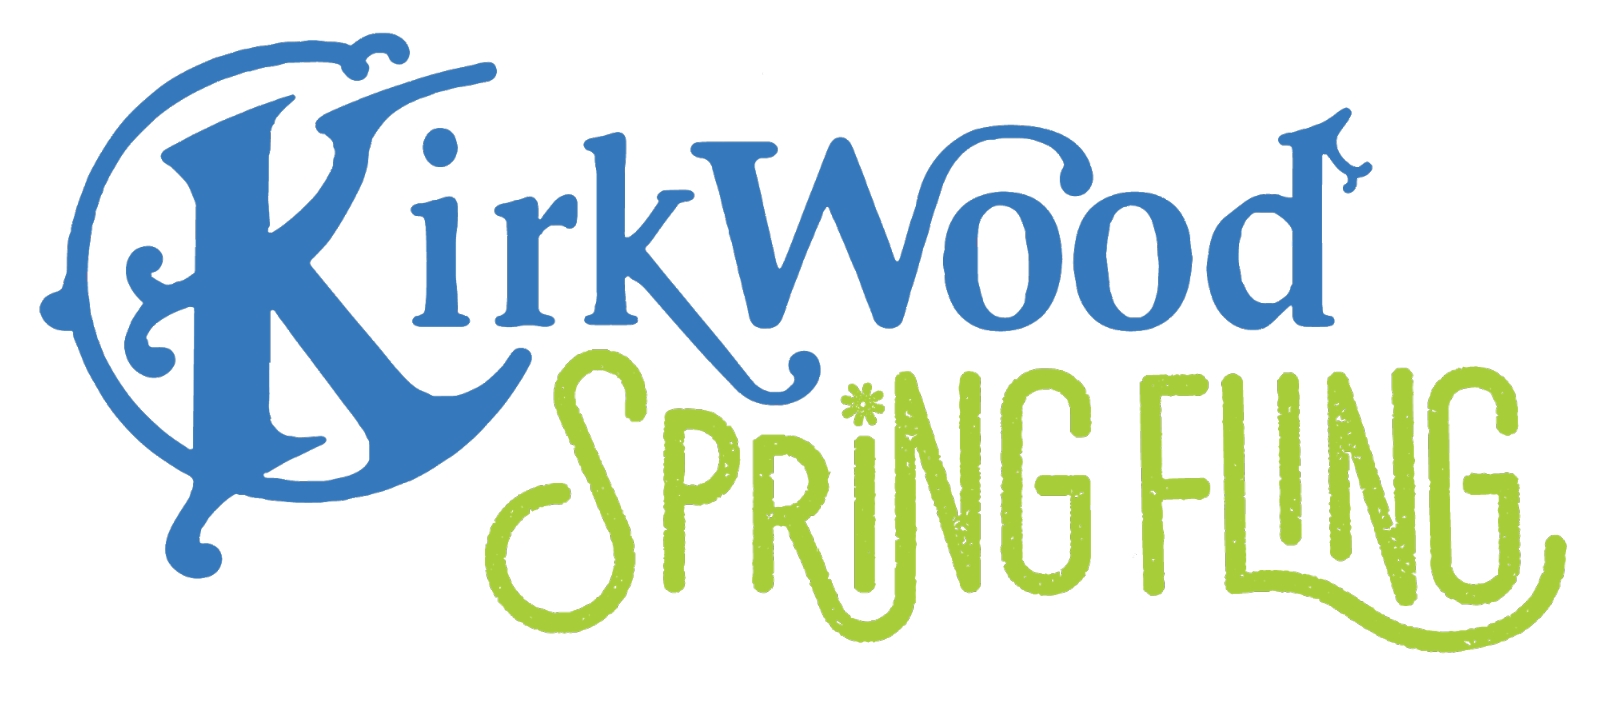 CANCELLED: 2020 Kirkwood Spring Fling